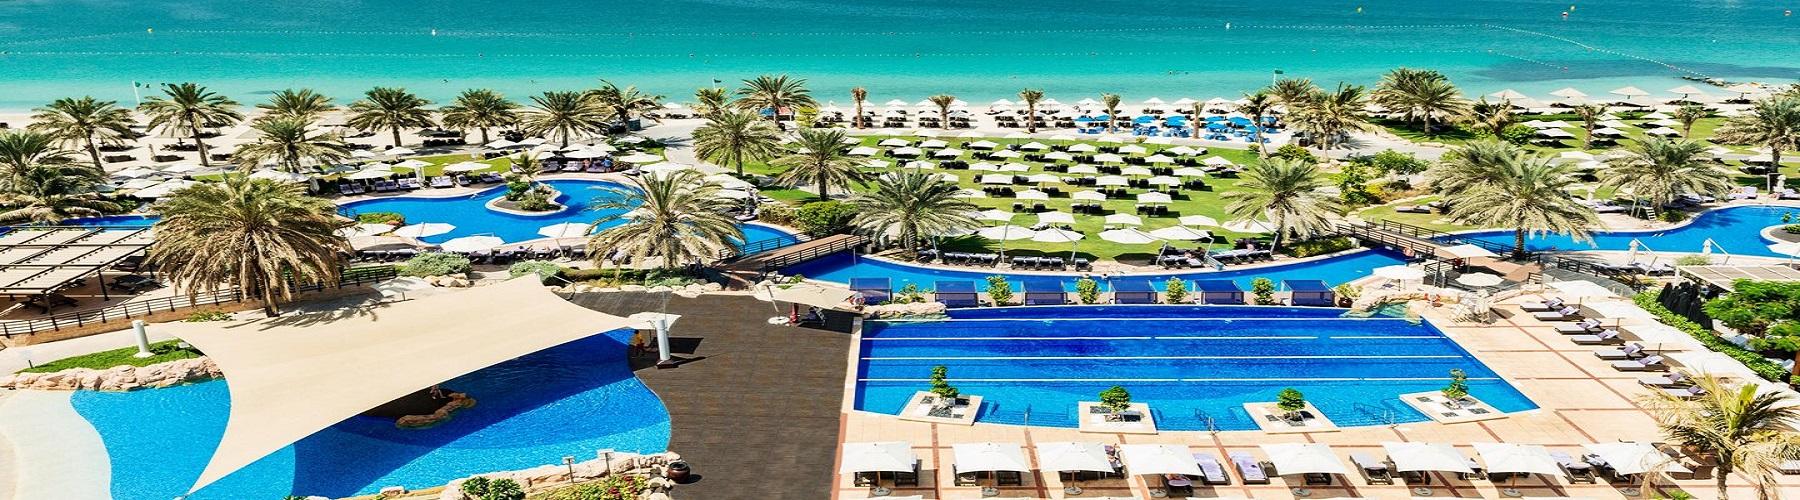 Территория отеля The Westin Dubai Mina Seyahi Beach Resort and Marina